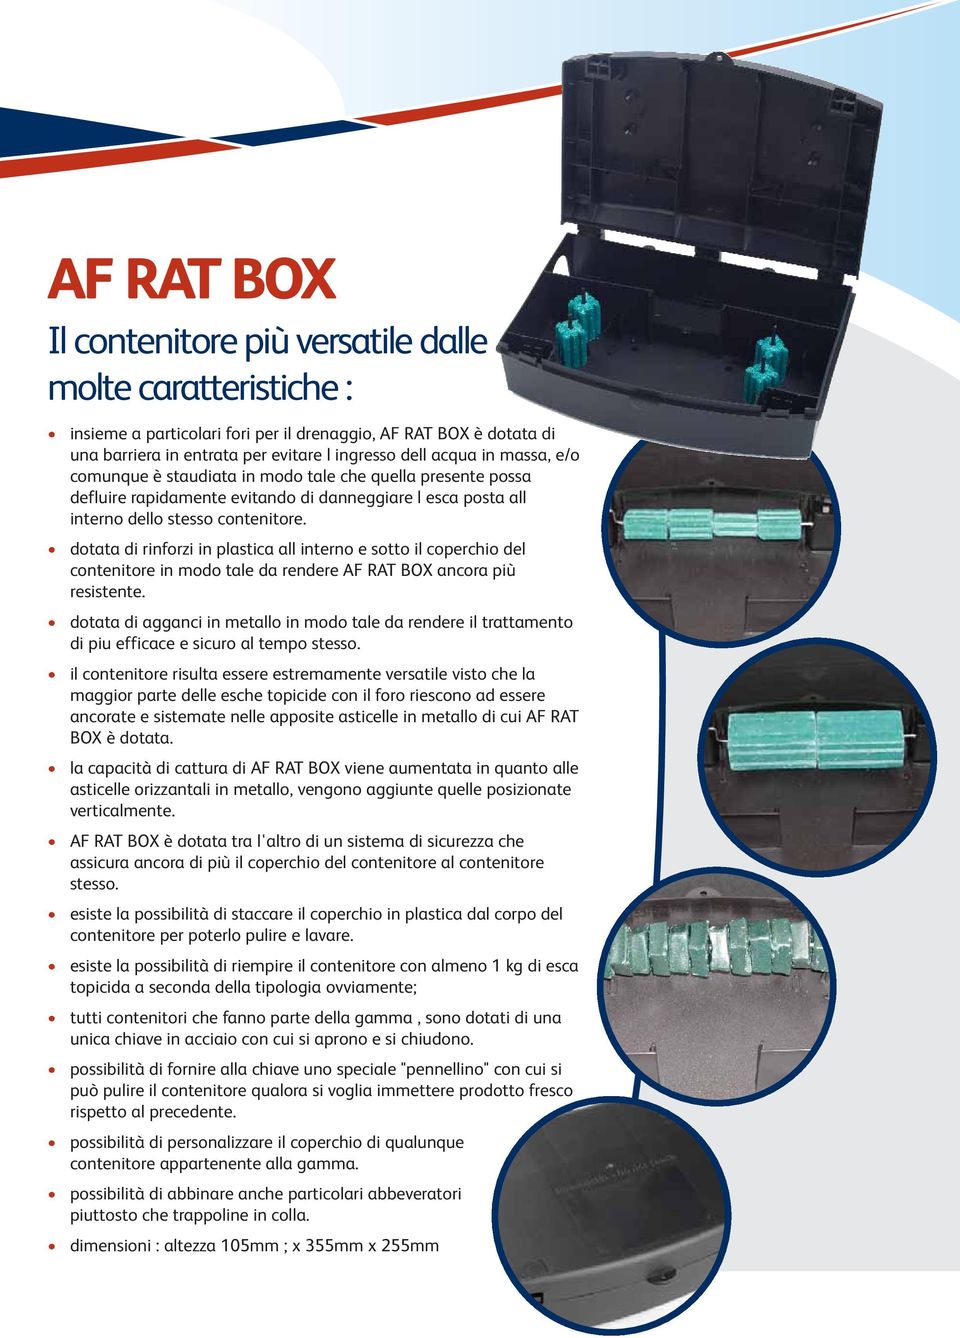 dotata di rinforzi in plastica all interno e sotto il coperchio del contenitore in modo tale da rendere AF RAT BOX ancora più resistente.